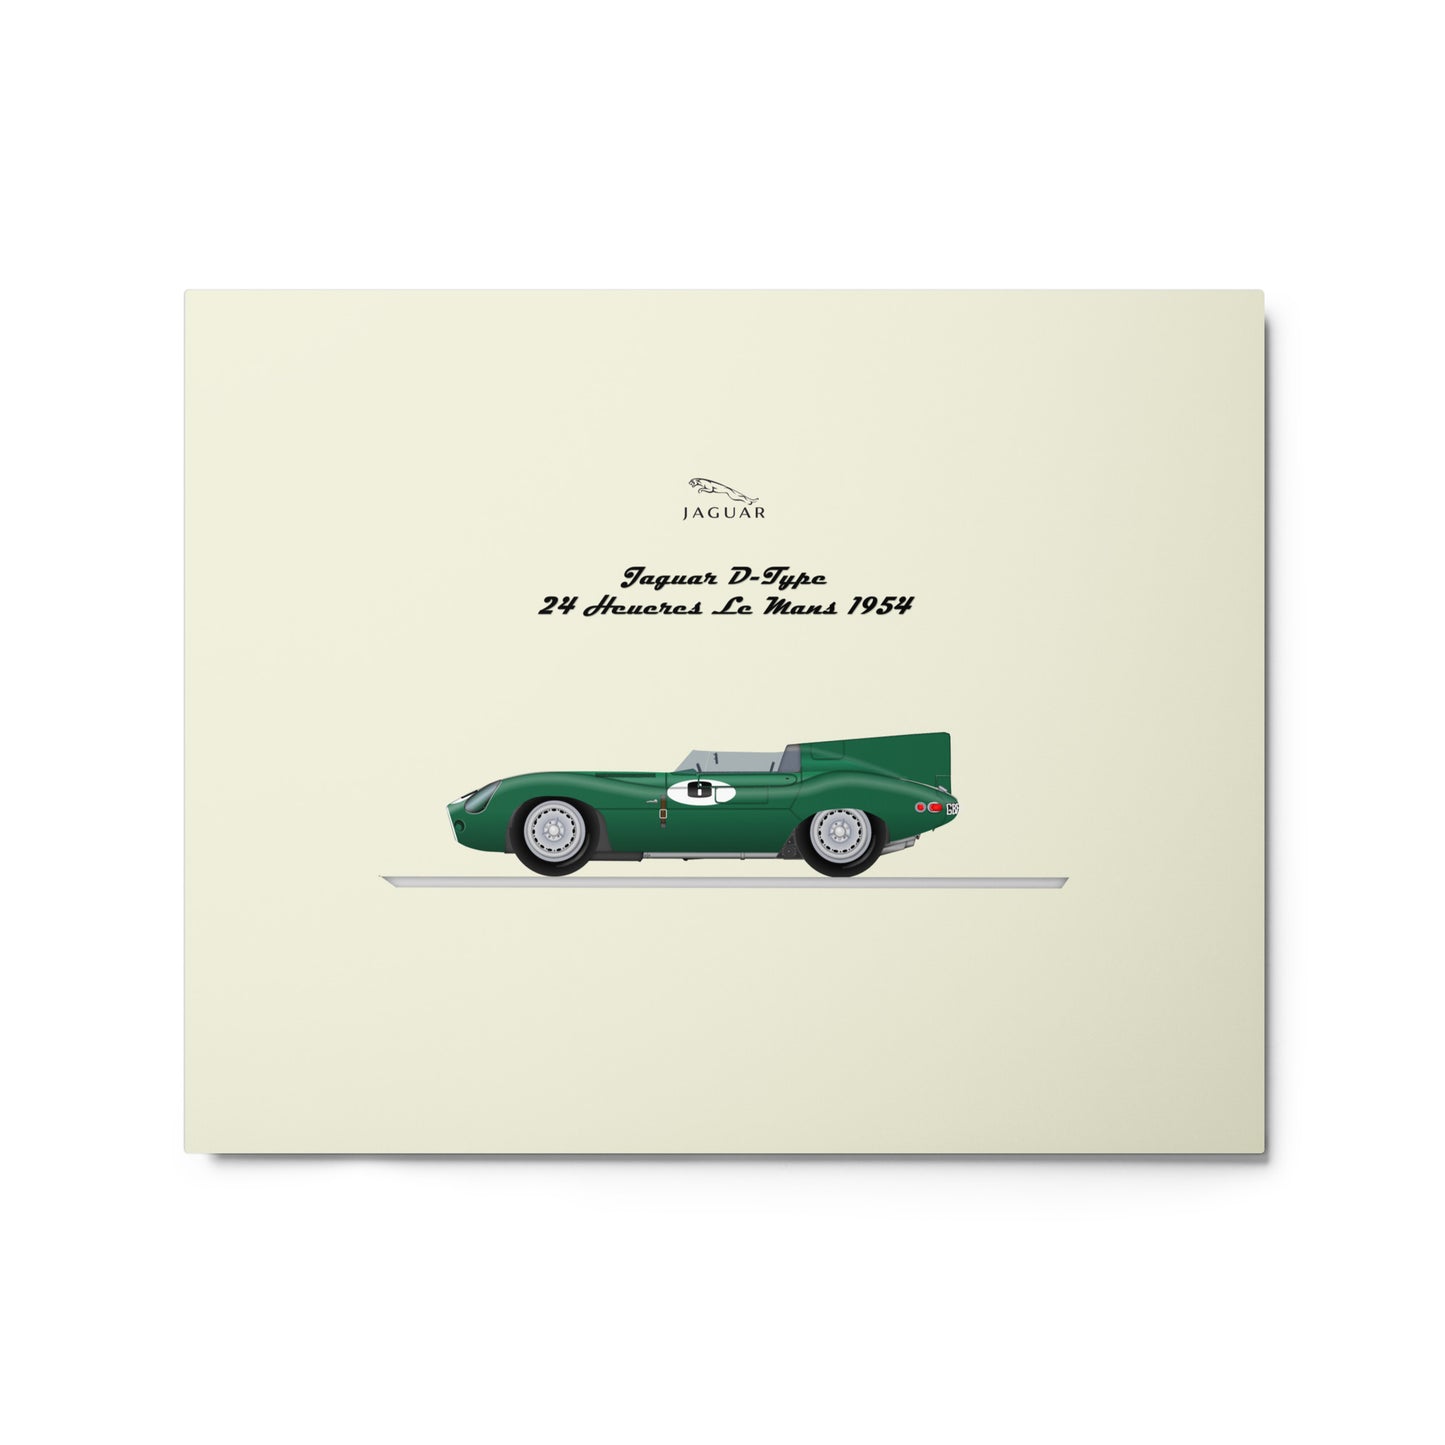 Car-WSC Jaguar D-Type Le Mans 1954 By Gianfranco Lanini